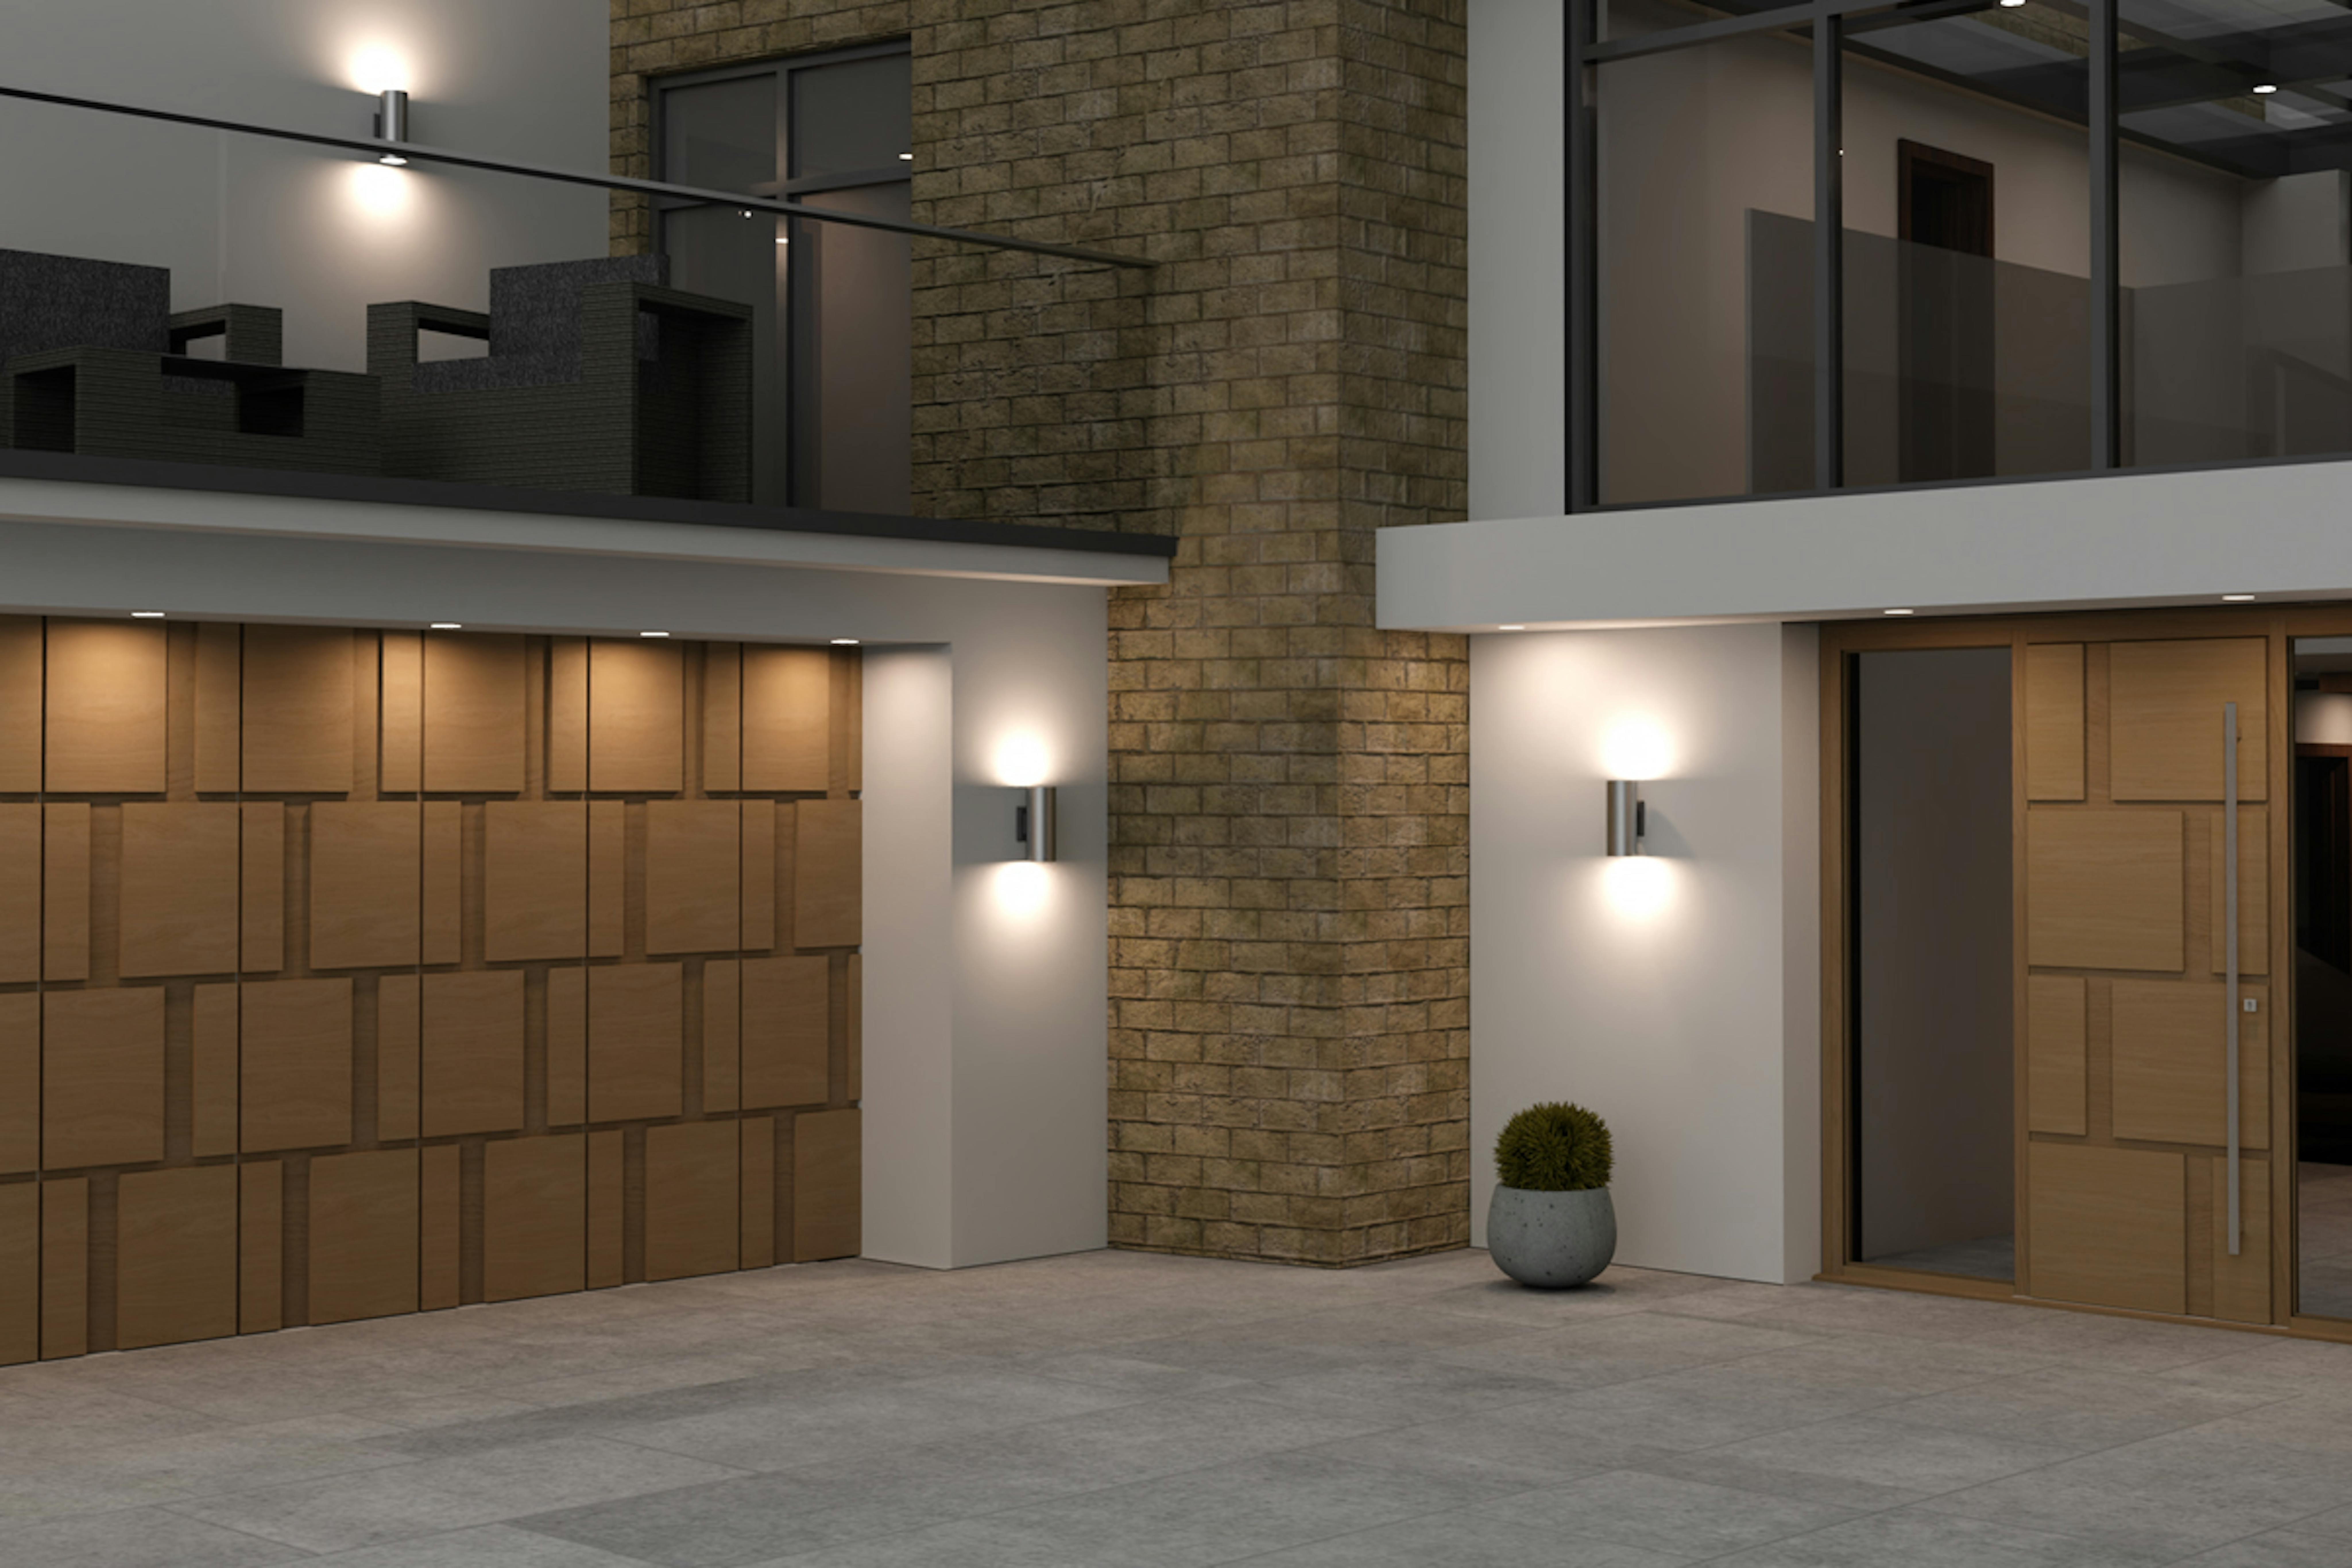 Your bespoke garage door: design considerations